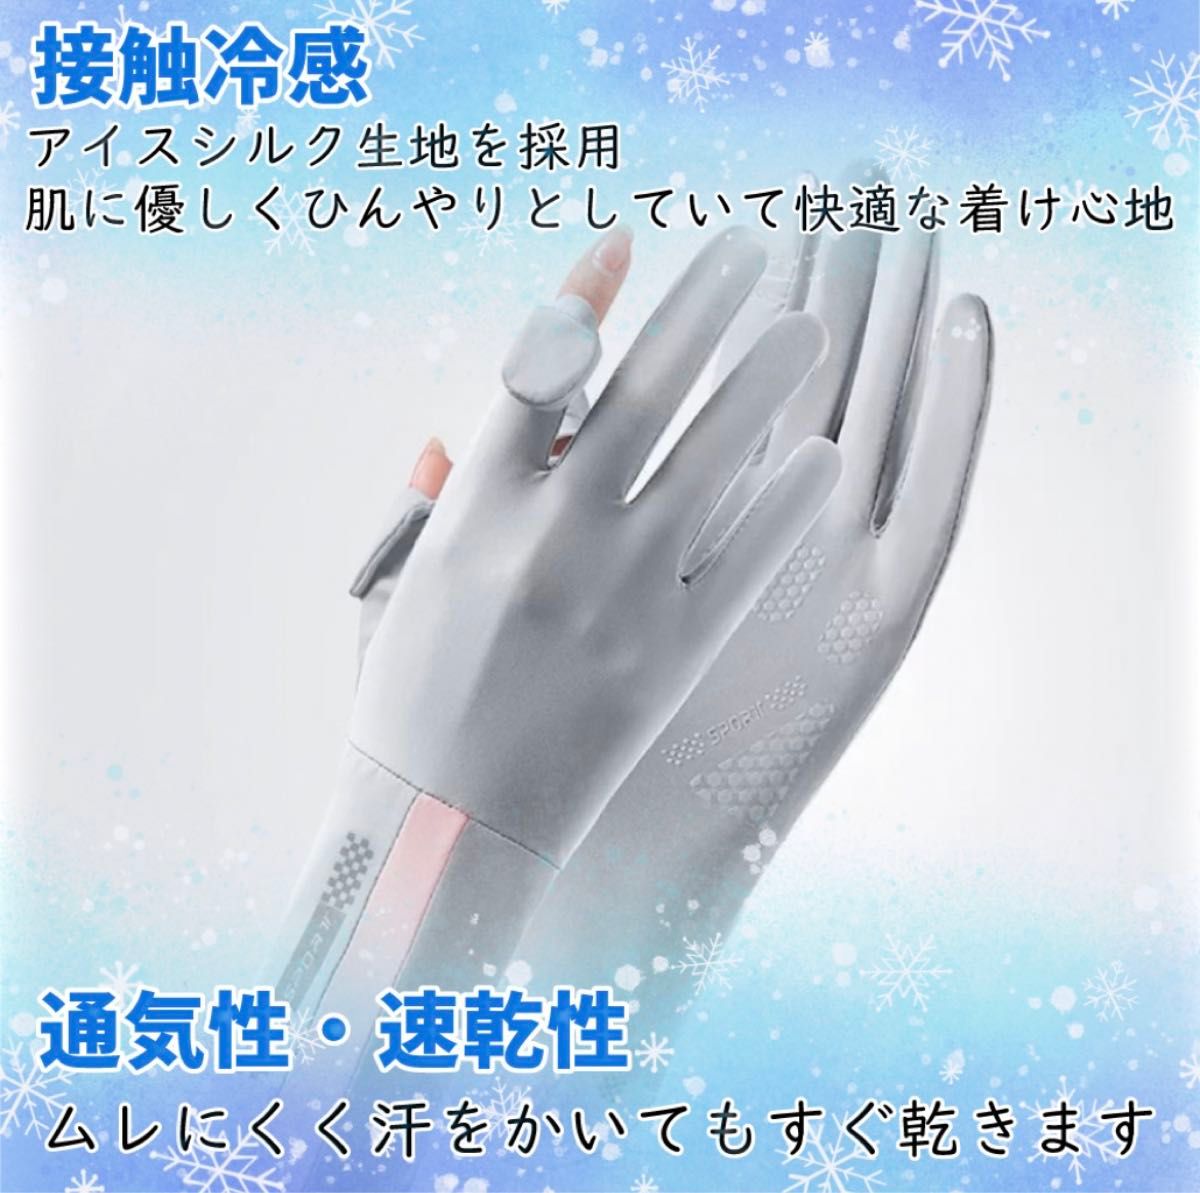 UVグローブ 手袋 レディース アームカバー UVカット 日焼け止め 夏 接触冷感 通気性 速乾 UV対策 スマホ操作 ブラック